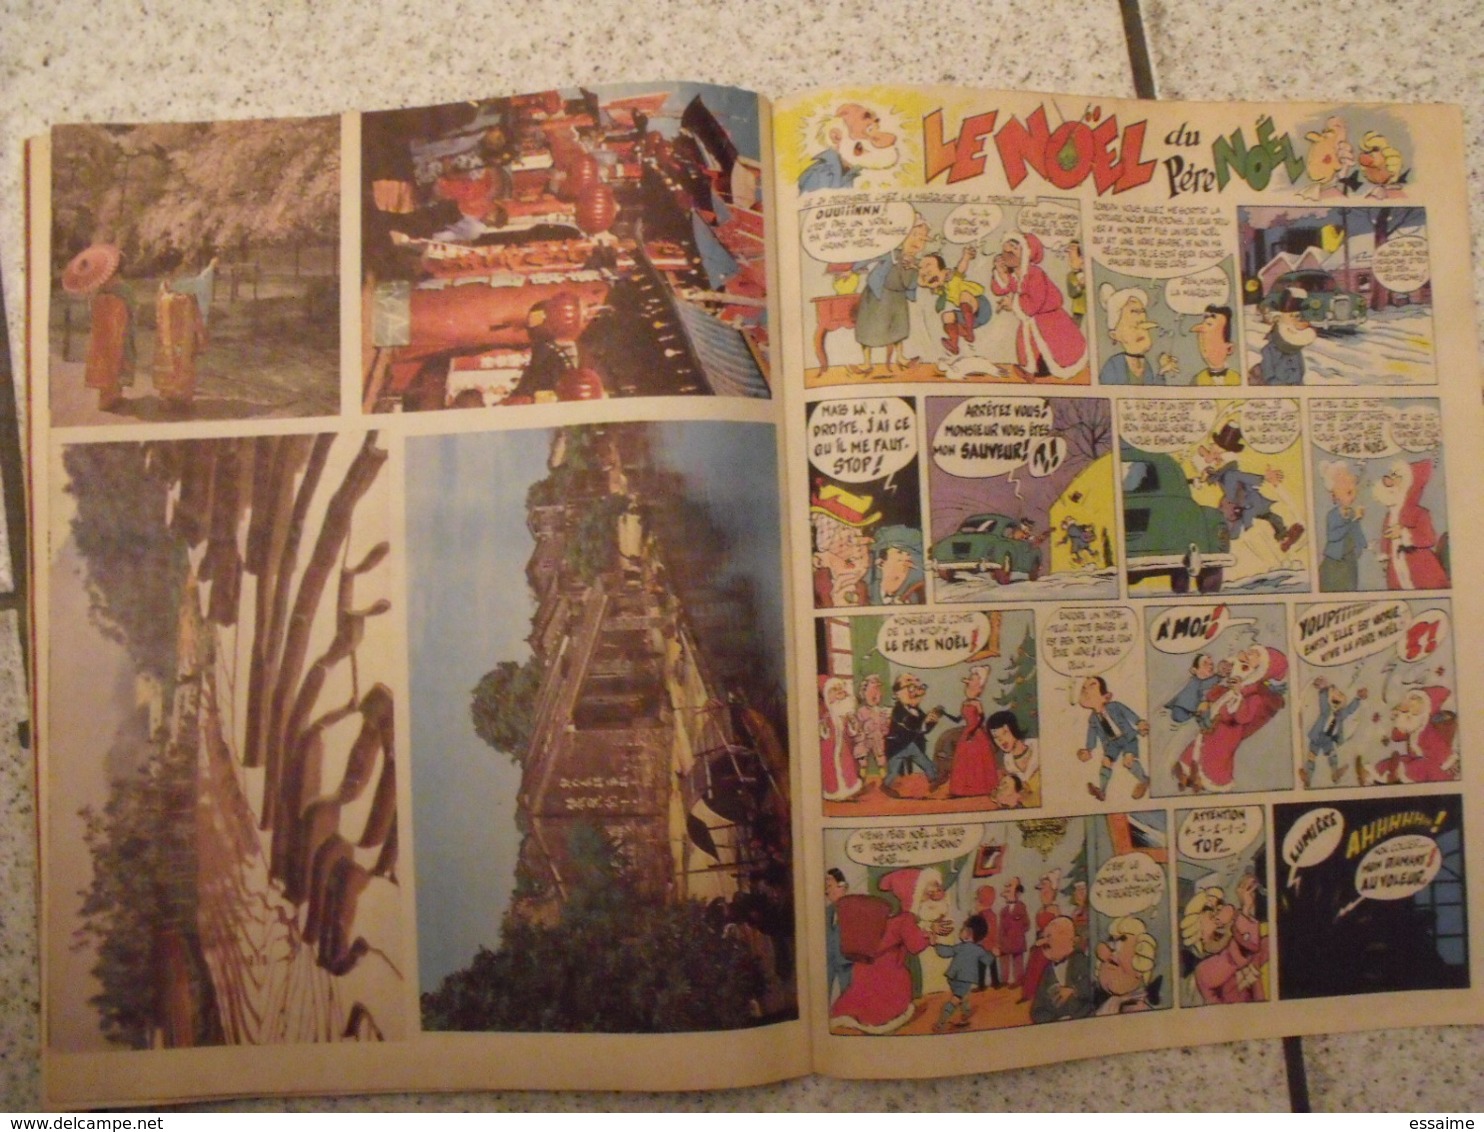 Amis-coop N° 40 De Décembre 1961. Journal BD à Redécouvrir. 36 Pages. - Other Magazines